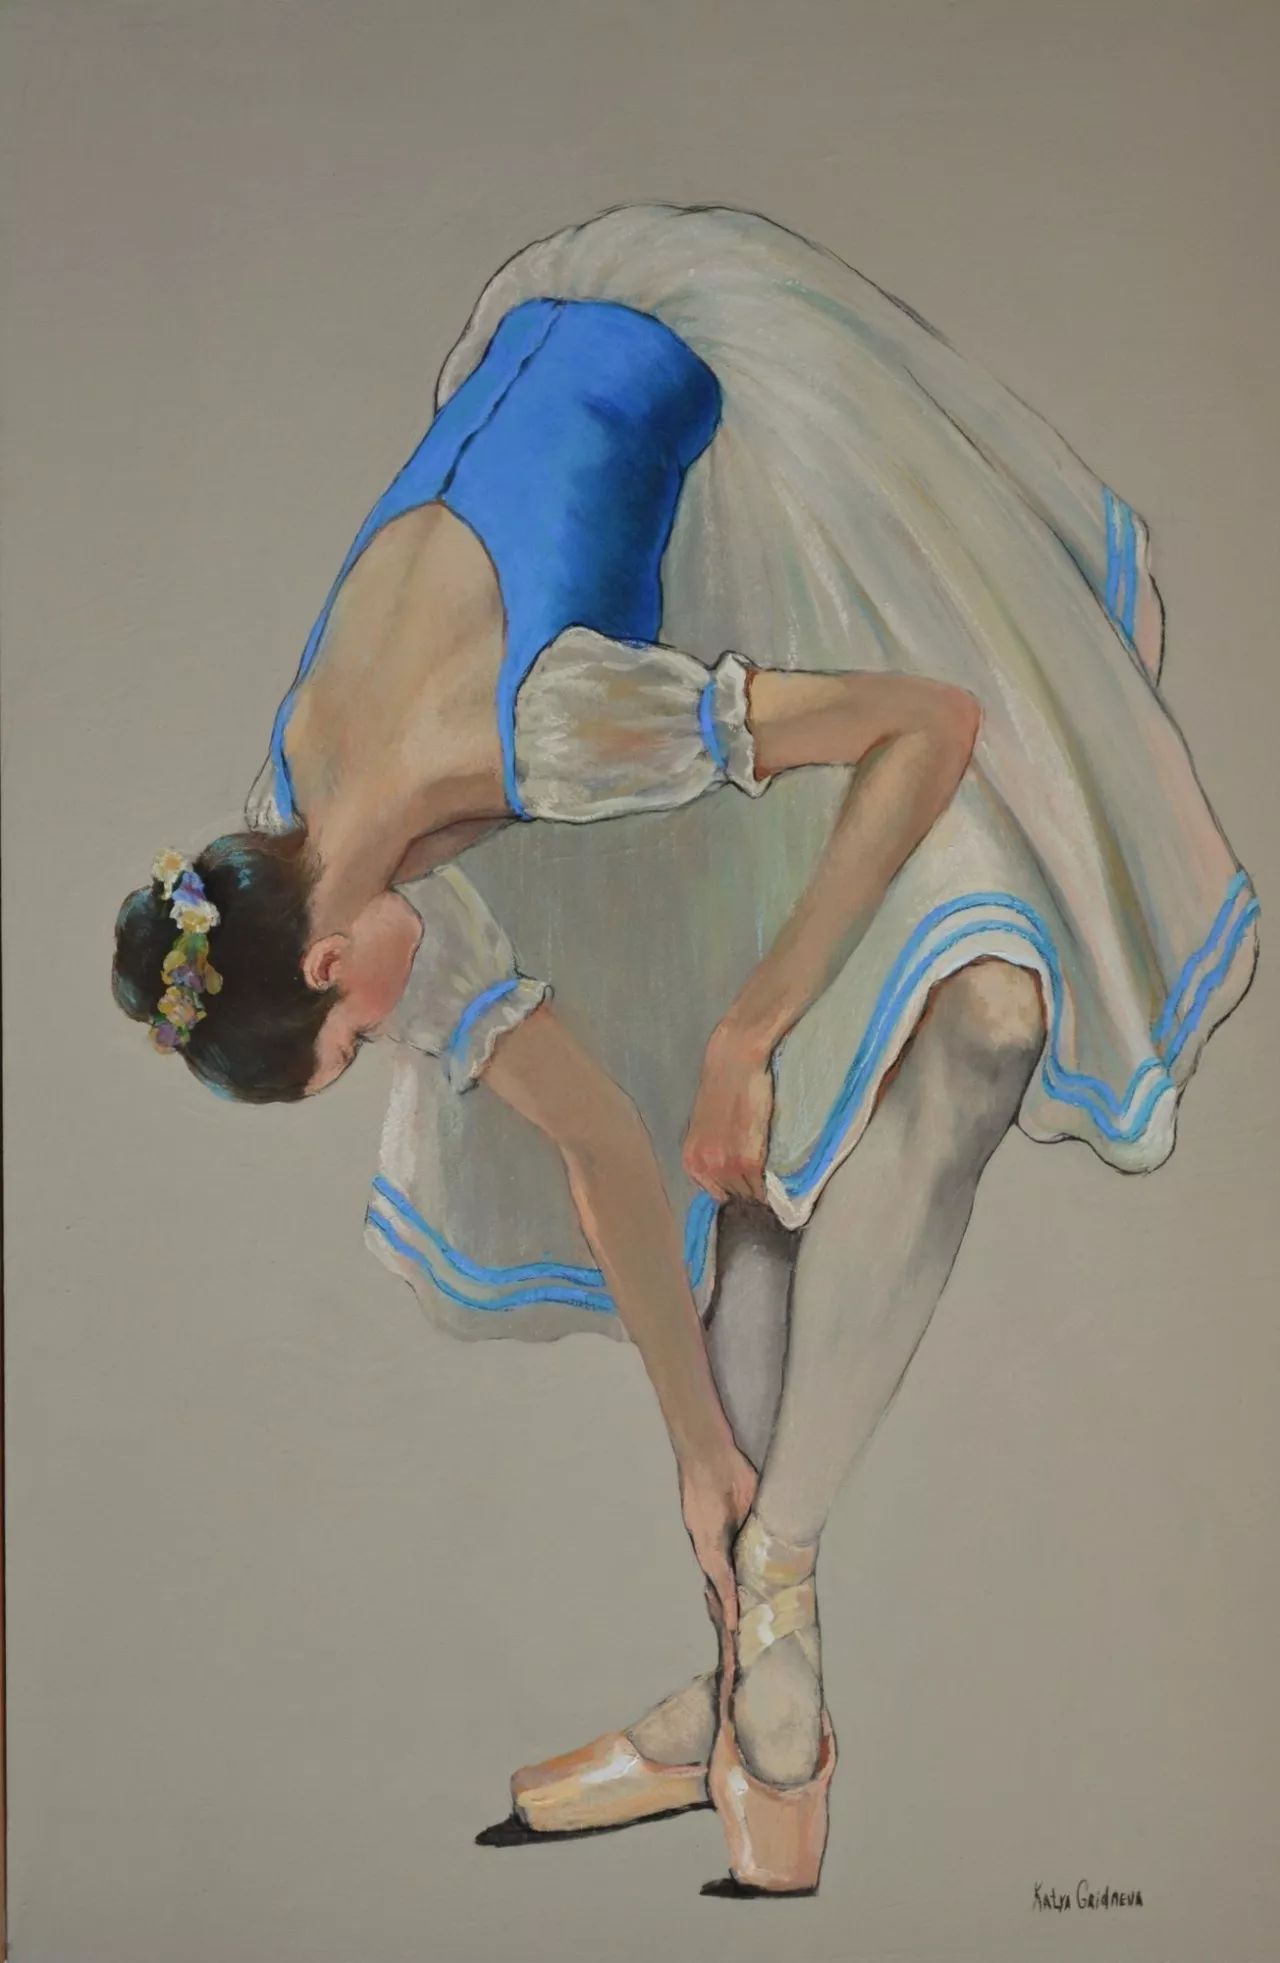 gridneva 来自乌克兰女画家 她用粉笔画把舞者 用简单的线条勾勒出来